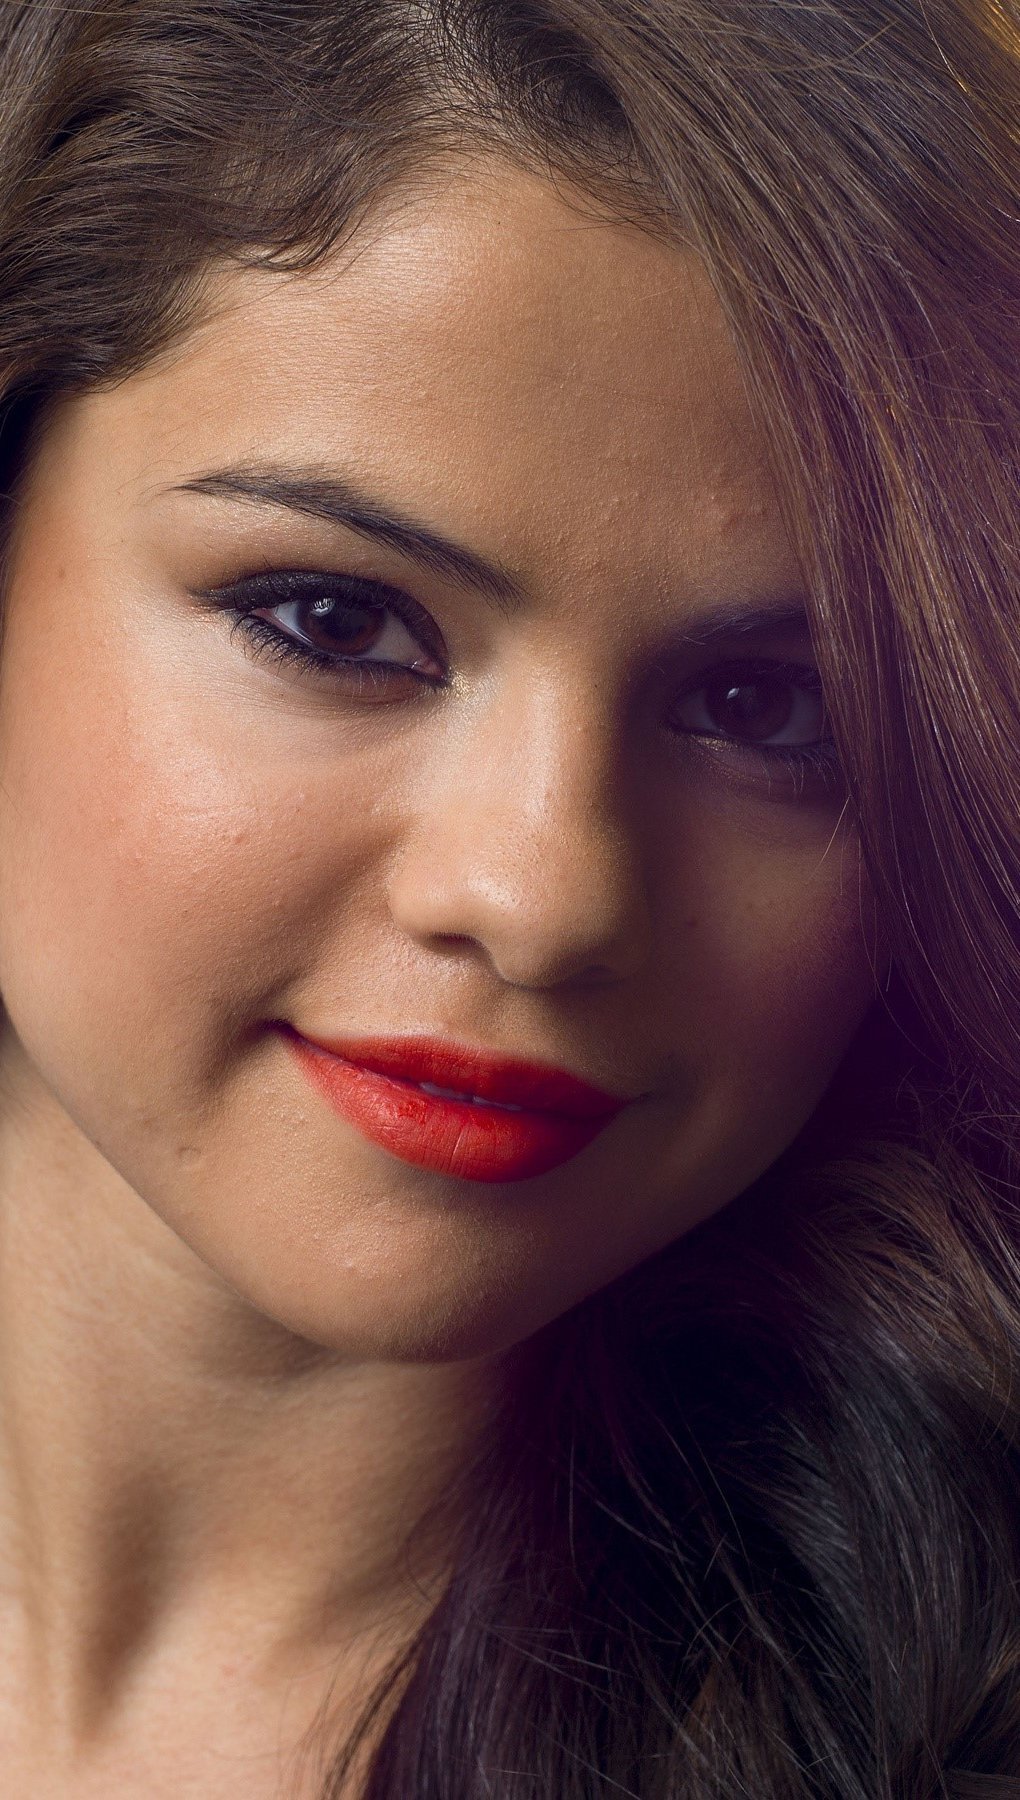 Fondos de pantalla Selena Gomez a contraluz Vertical